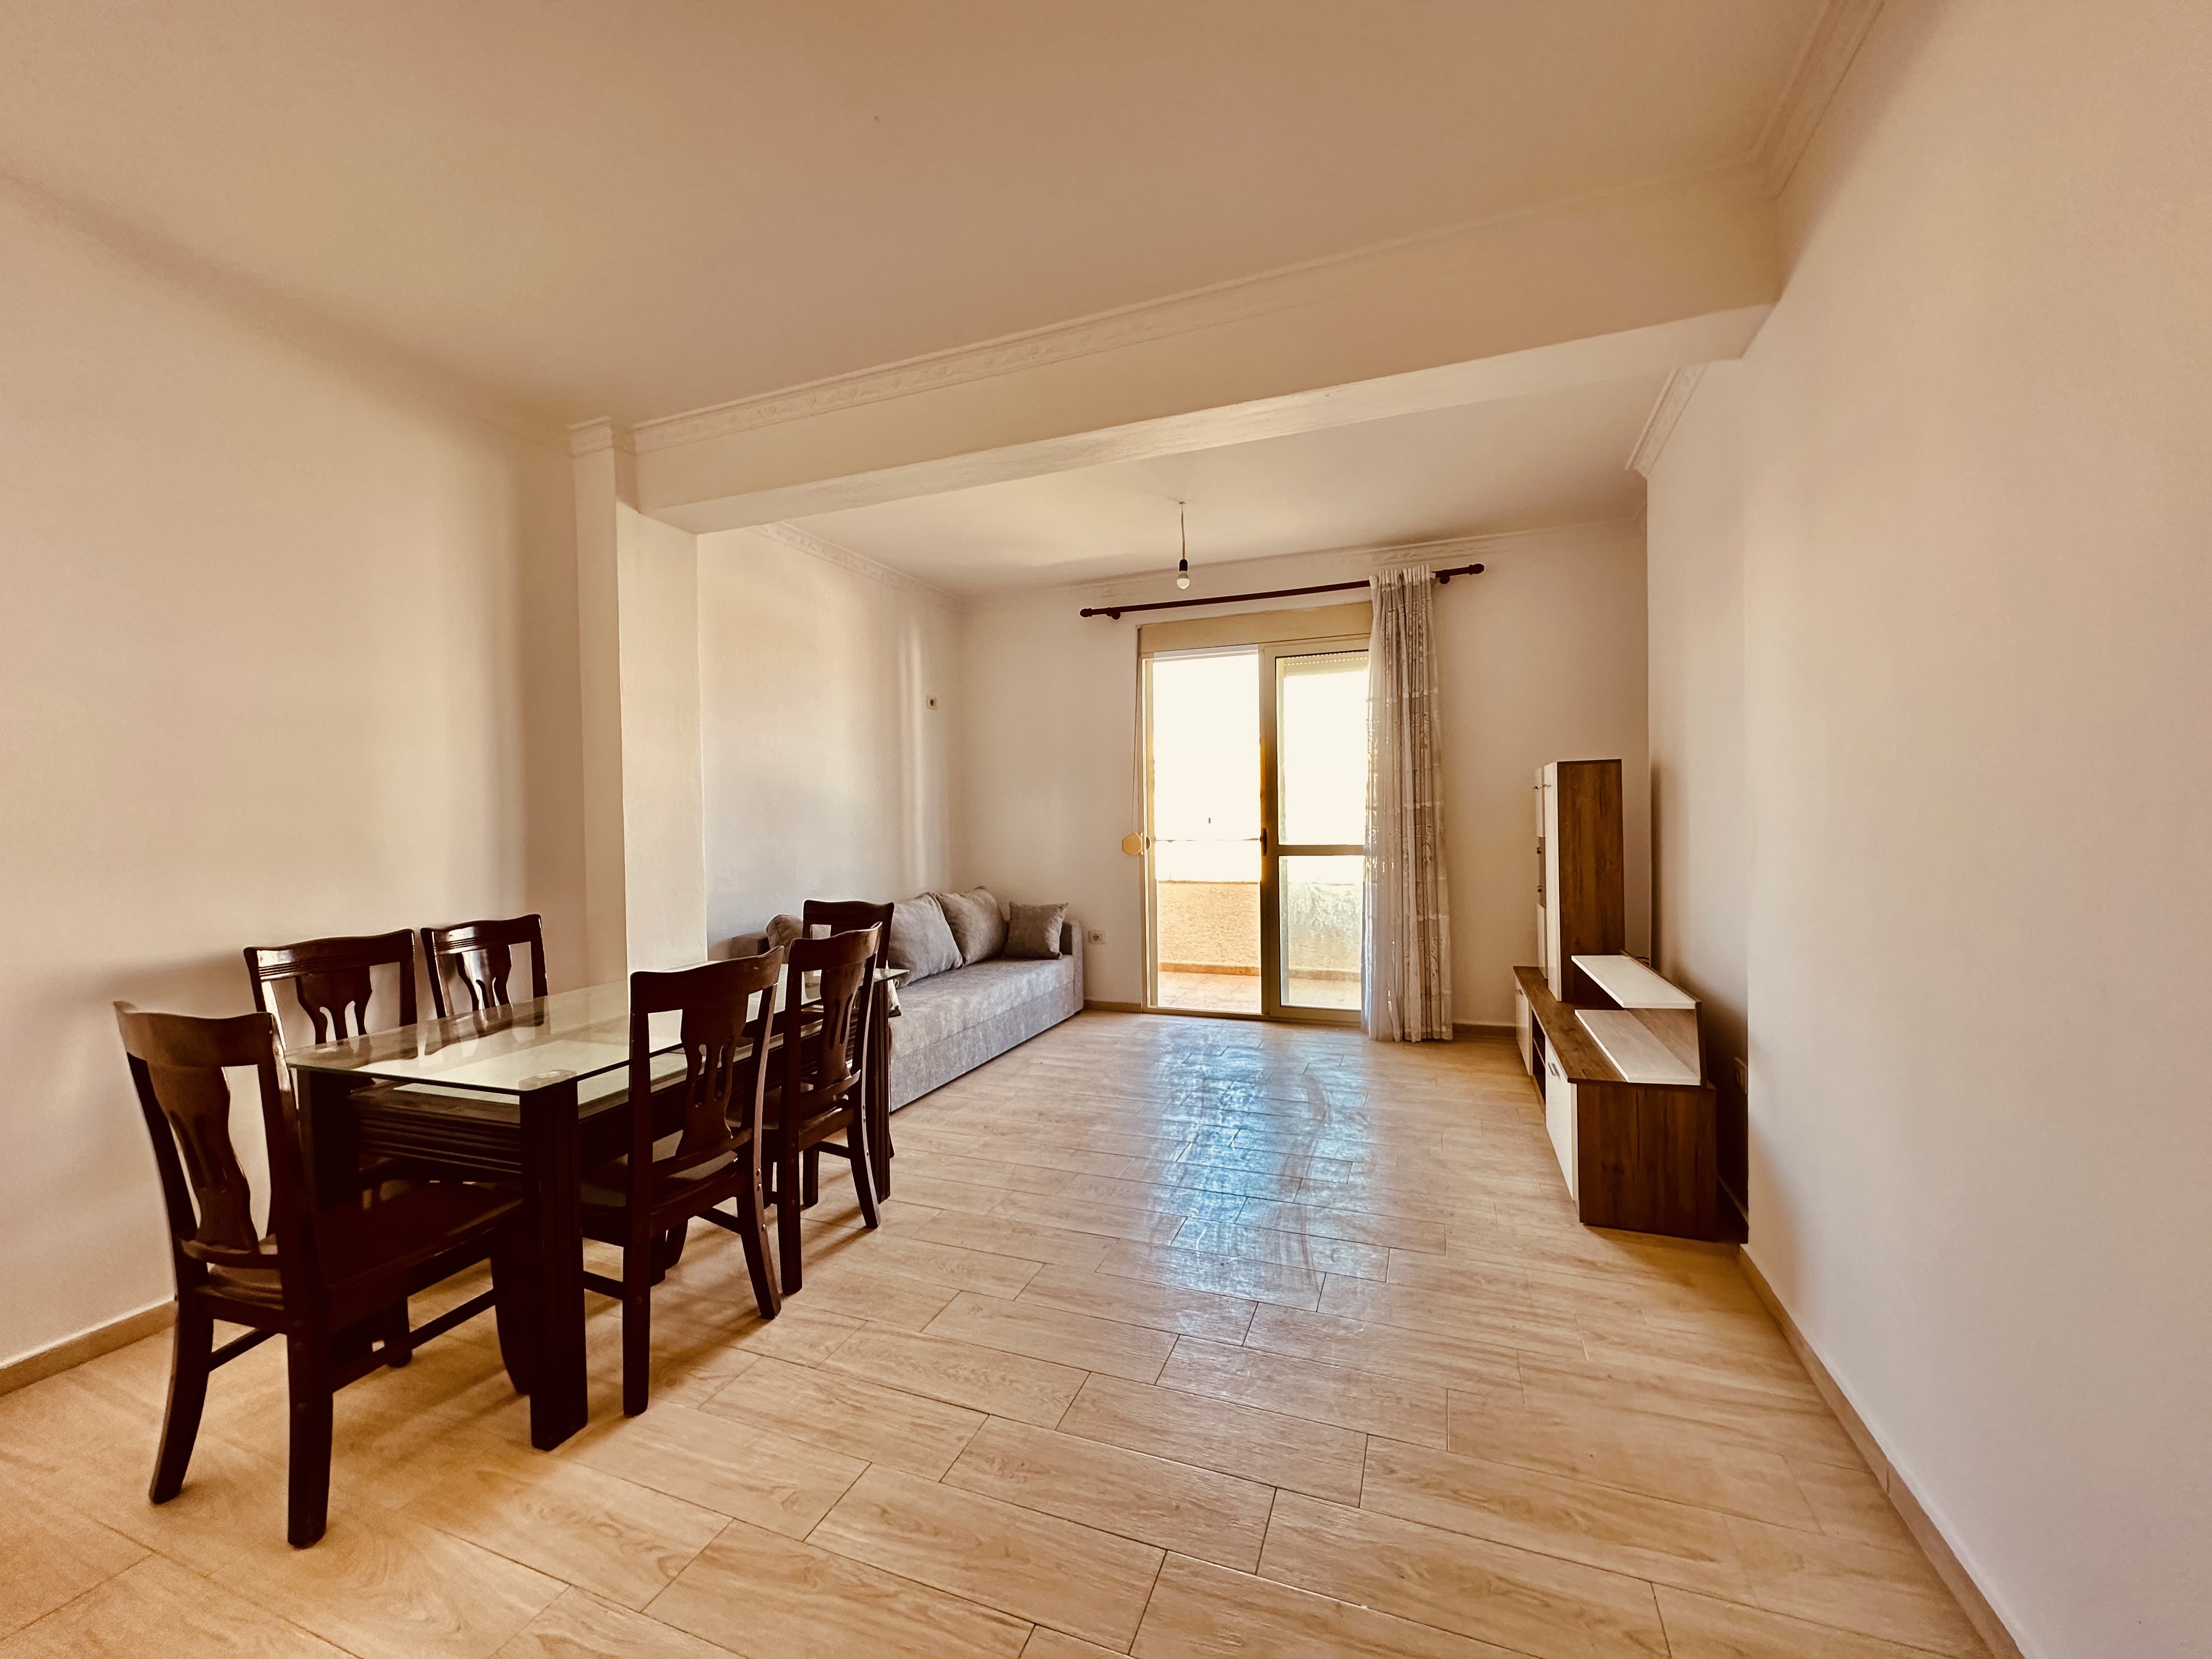 Foto e Apartment në shitje lagjia 13, Plazh,hekurudha, Durrës